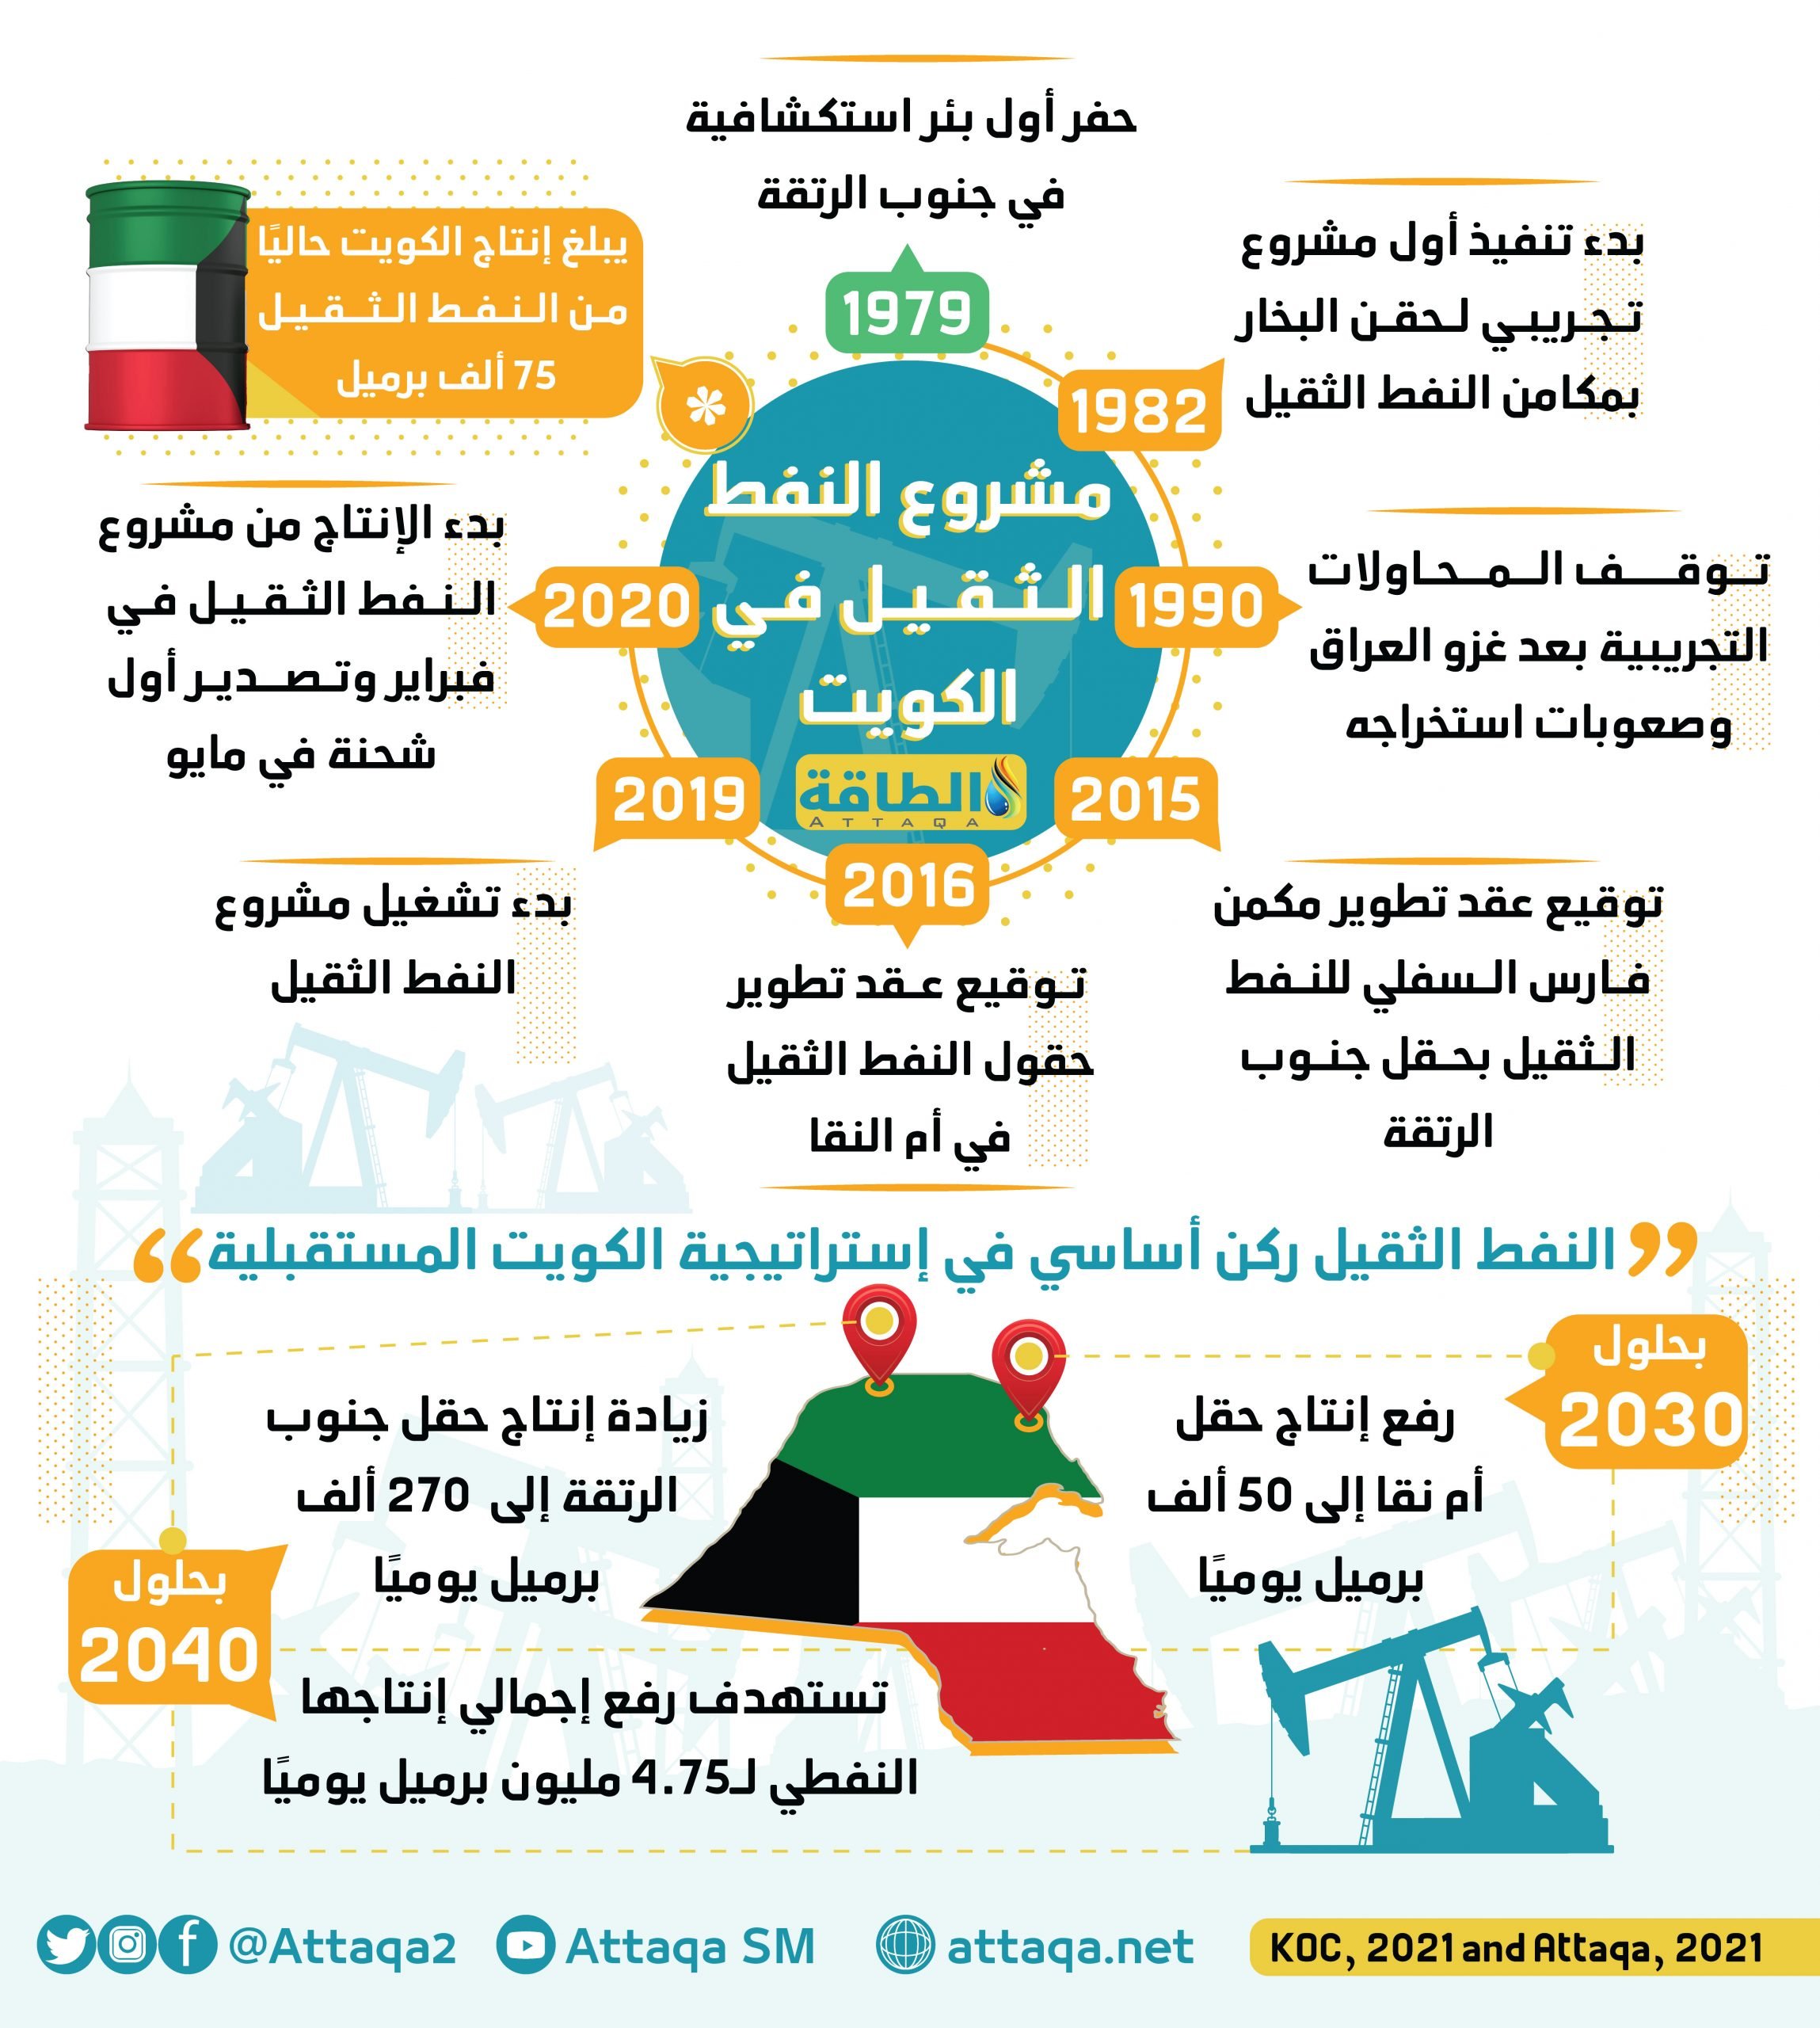 النفط الثقيل الكويت